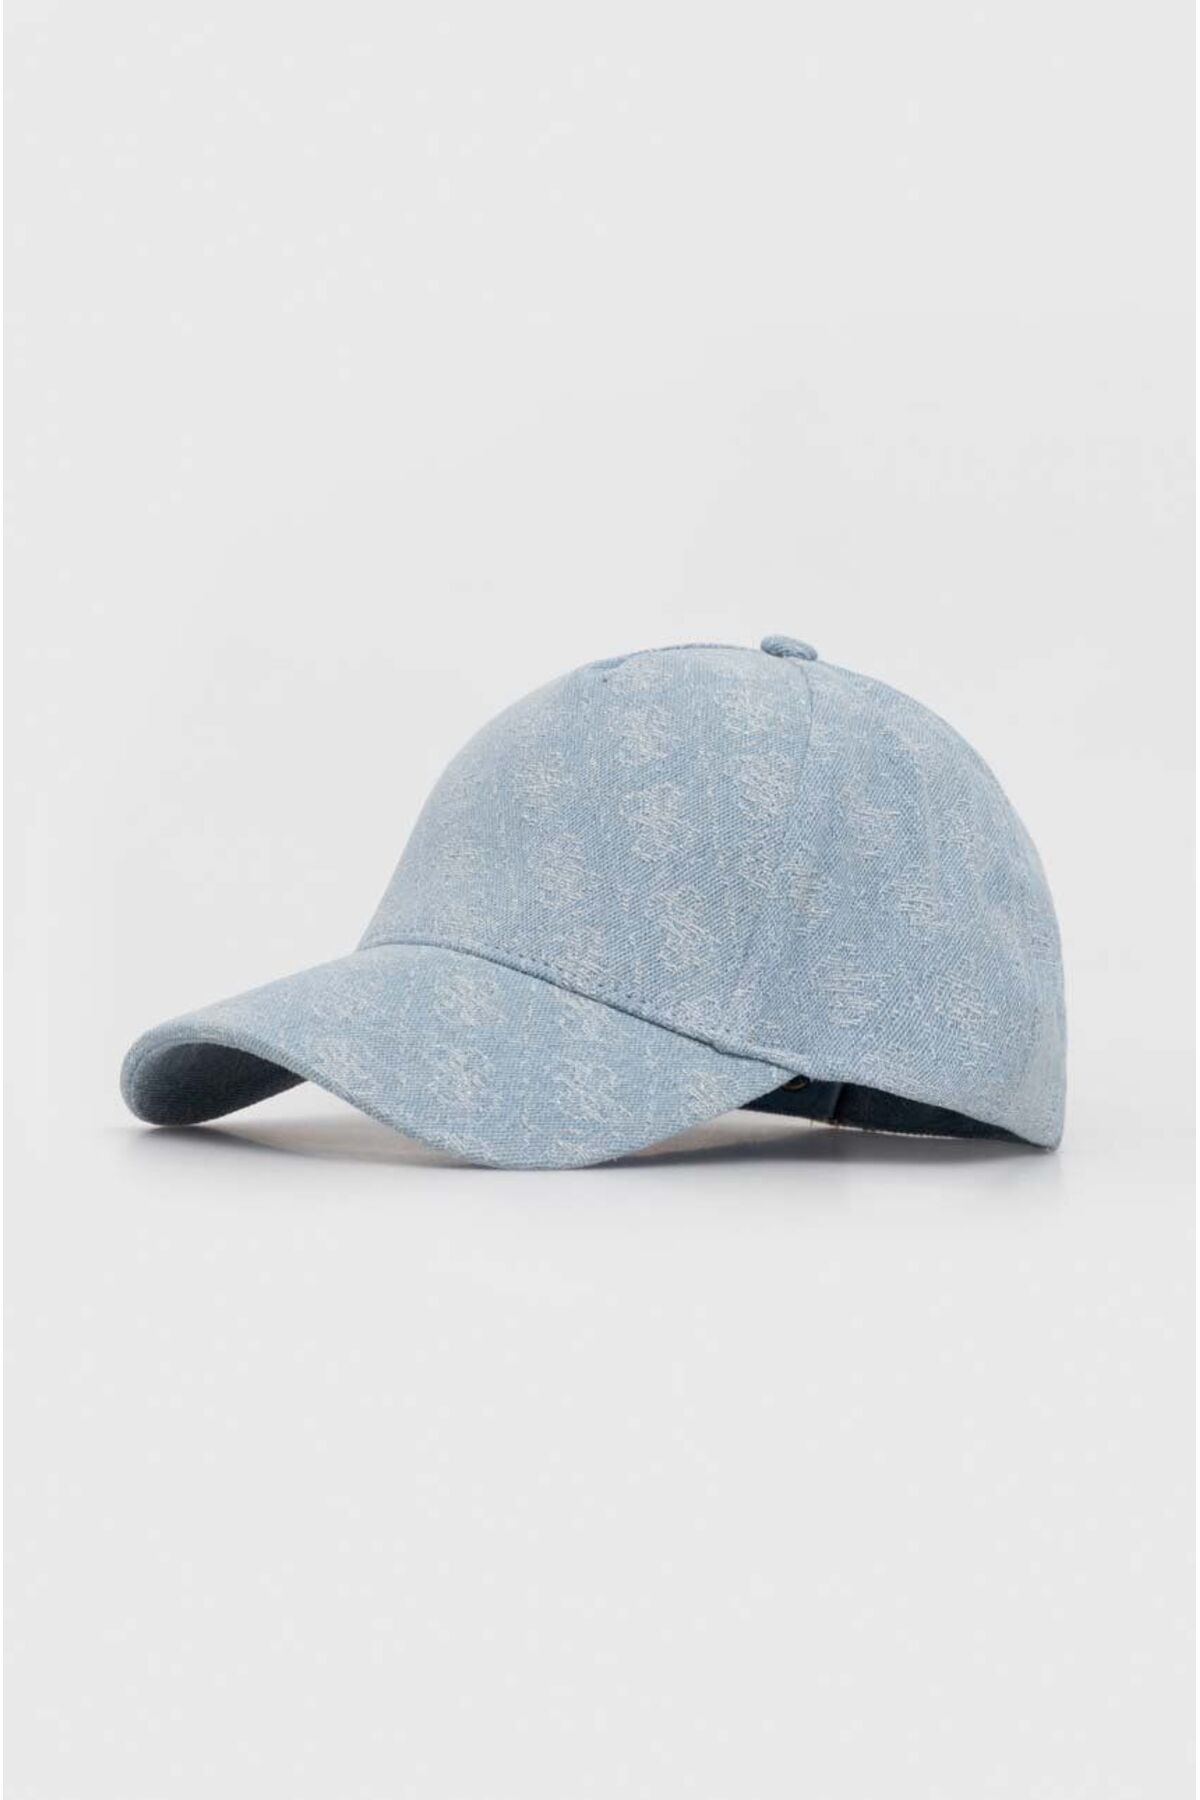 Guess Kadın Logolu Ayarlanabilir Spor Tasarım Açık Mavi Şapka AW5090 COT01-DEN